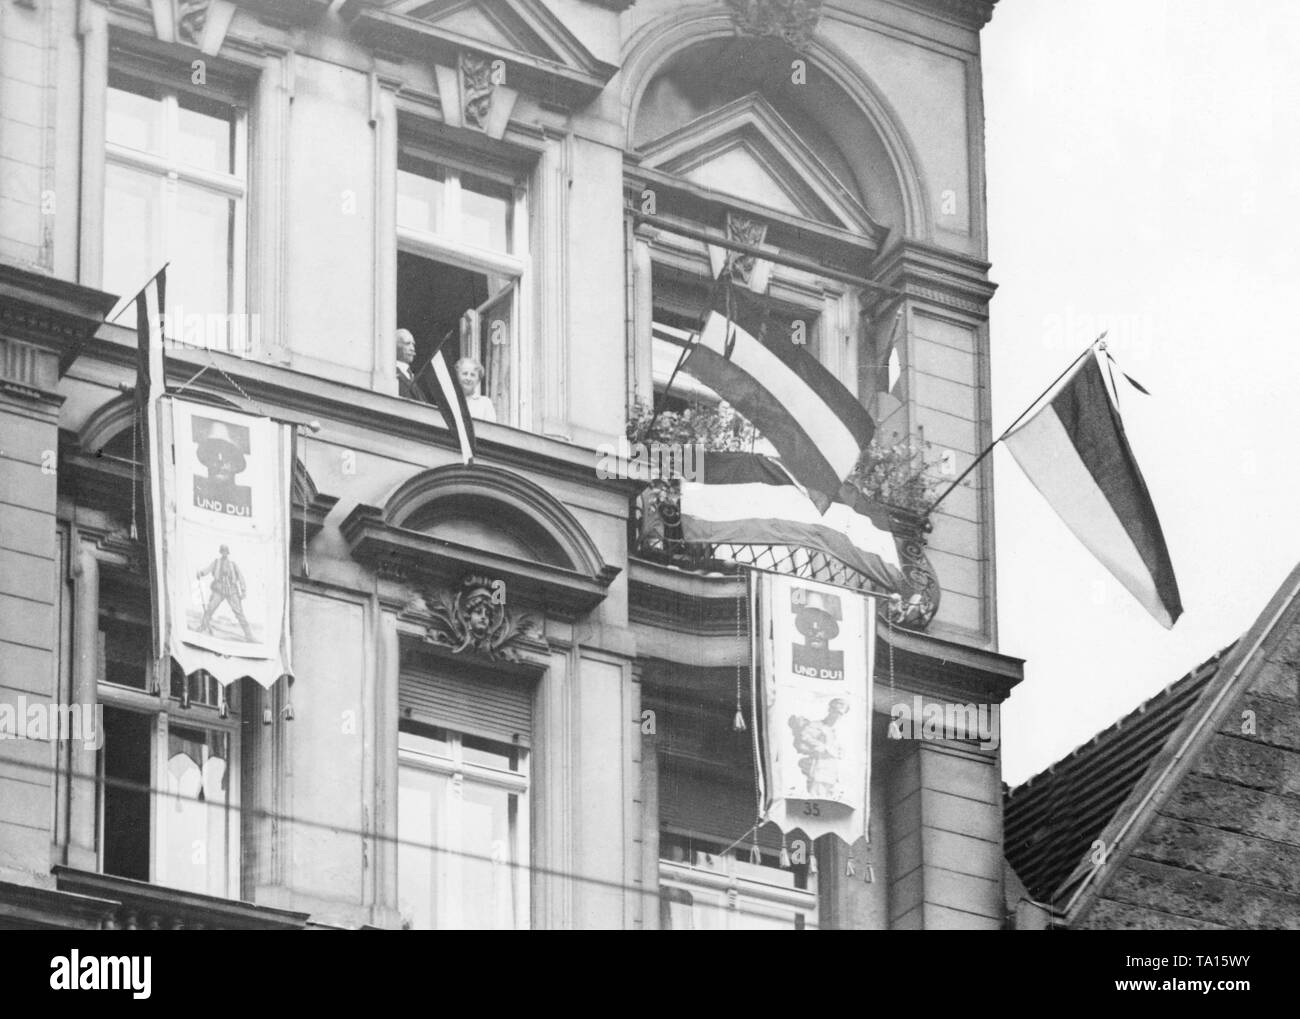 Ces berlinois sont évidemment enthousiastes à l'Stahlhelm, comme on suspend les drapeaux de l'empire par la fenêtre et d'affiches de l'Stahlhelm sur leur façade. Banque D'Images